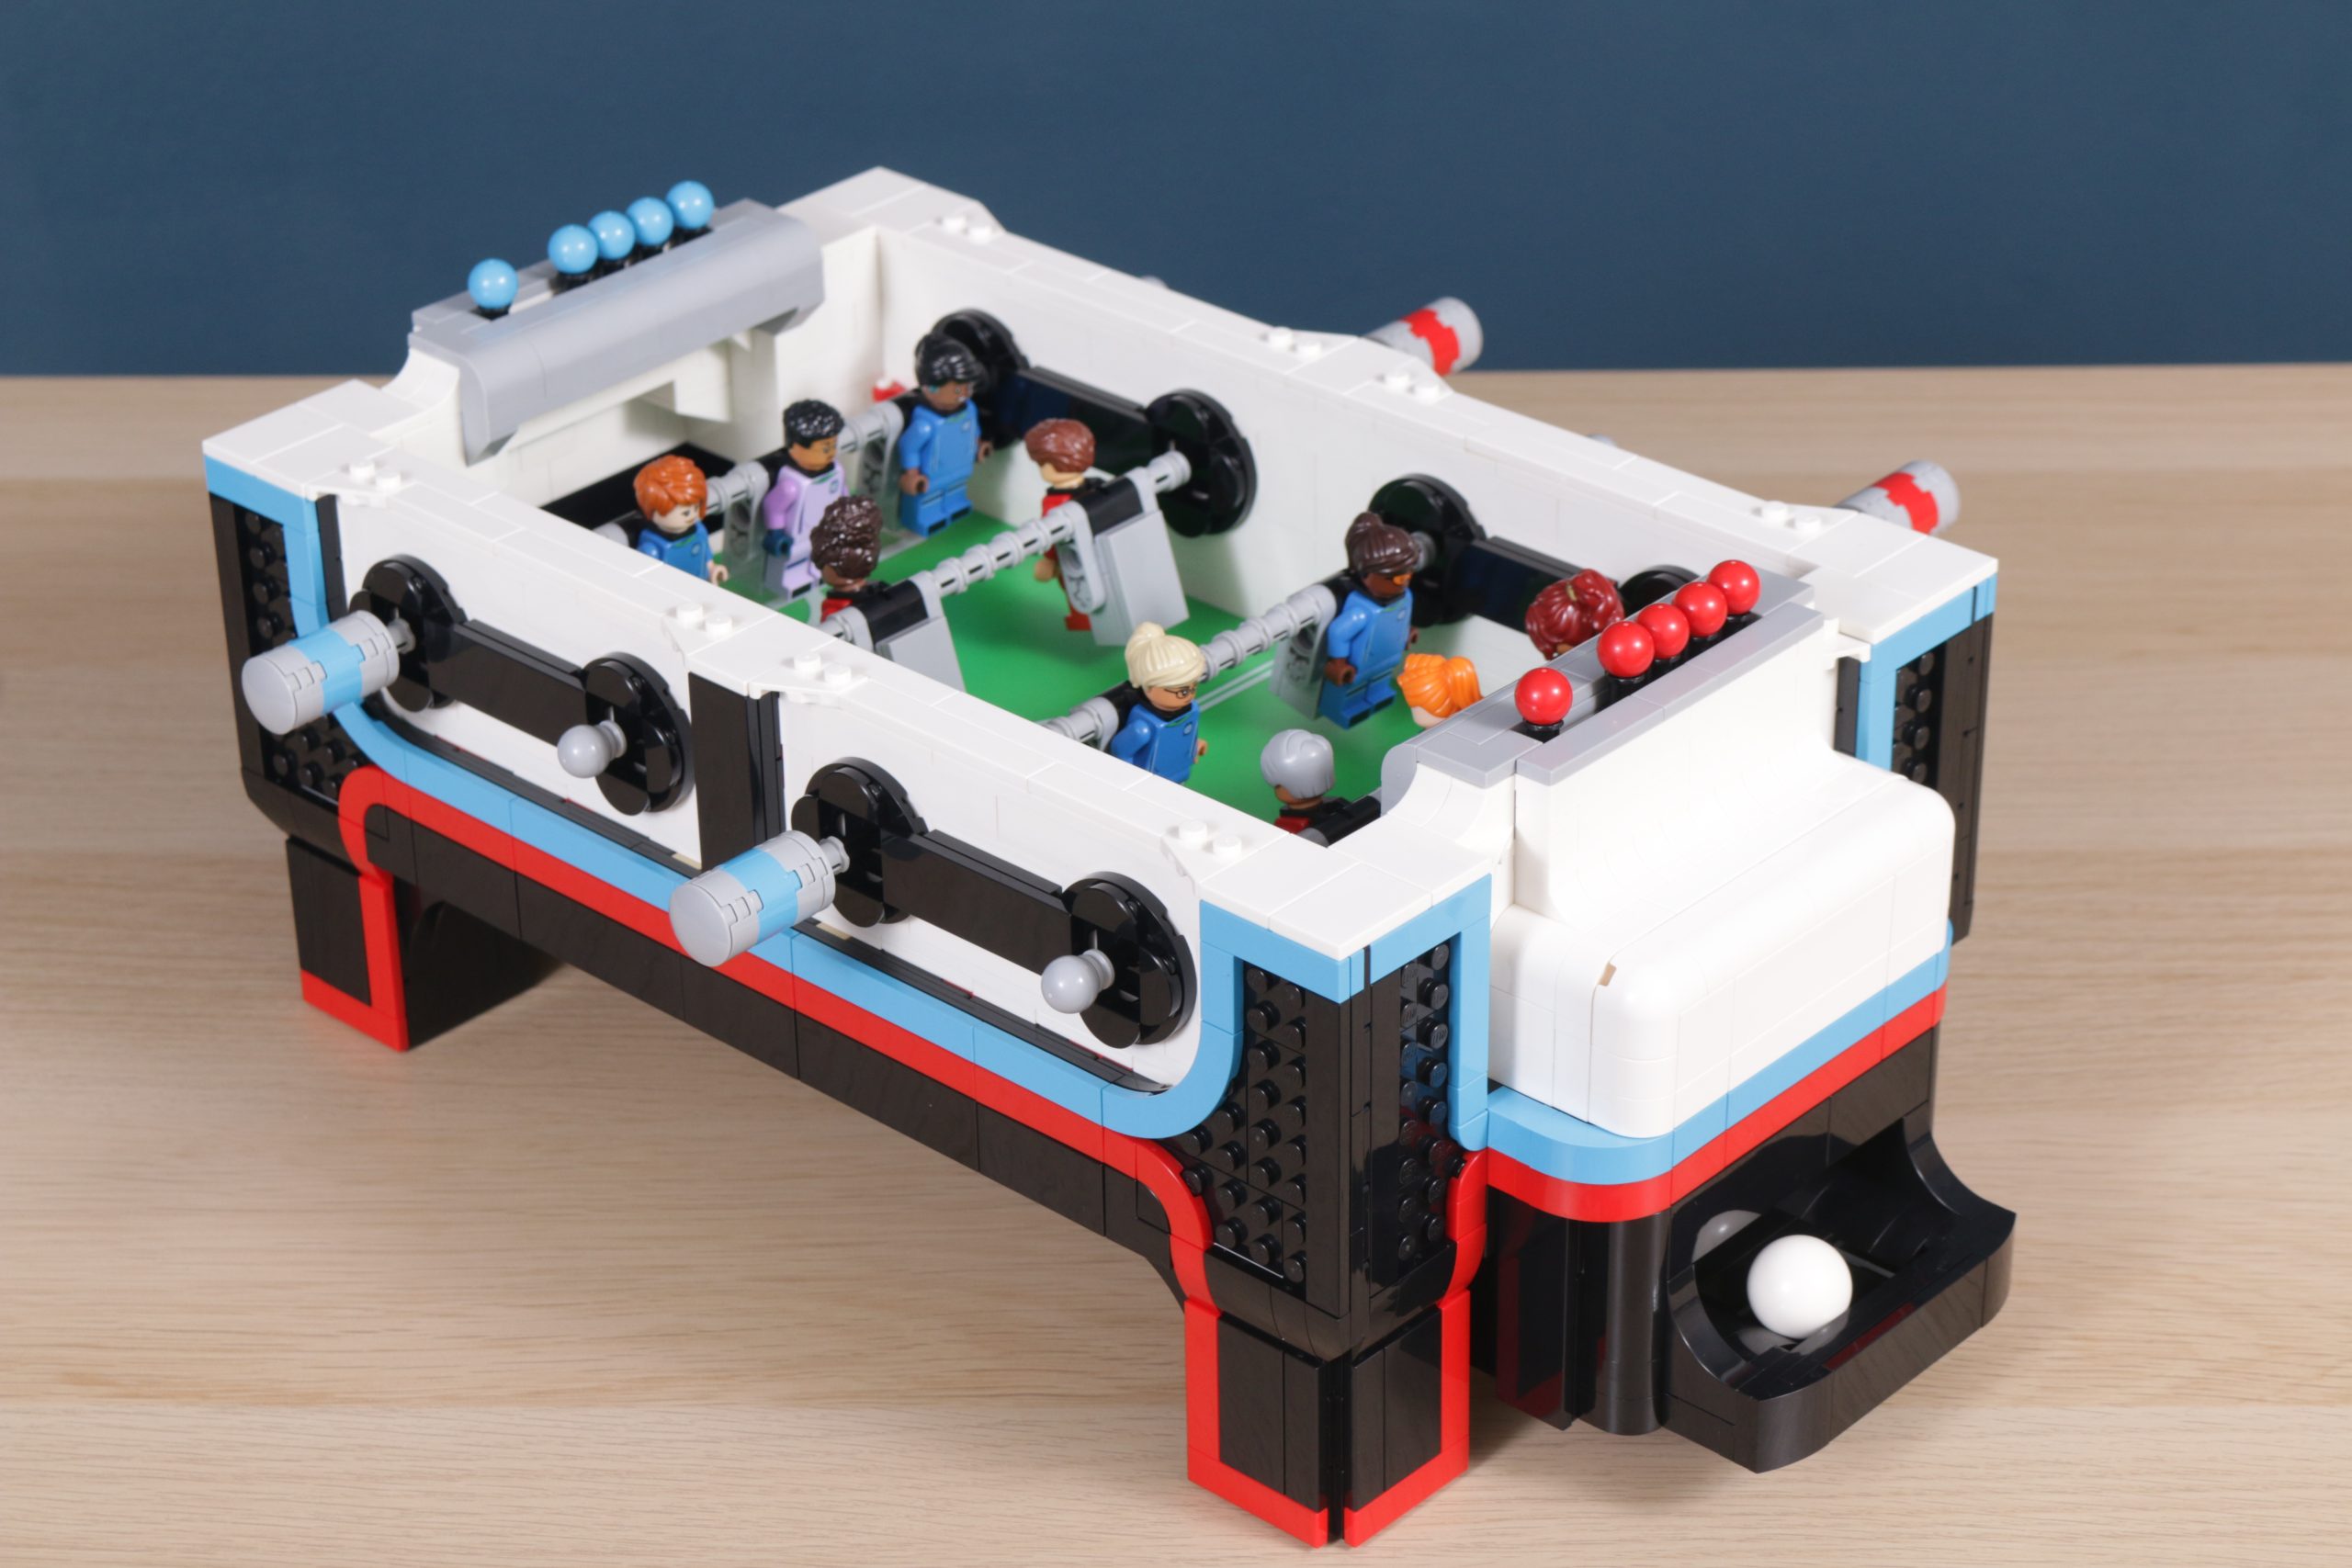 LEGO Ideas reveals 21337 Table Football, a 2,300-piece playable